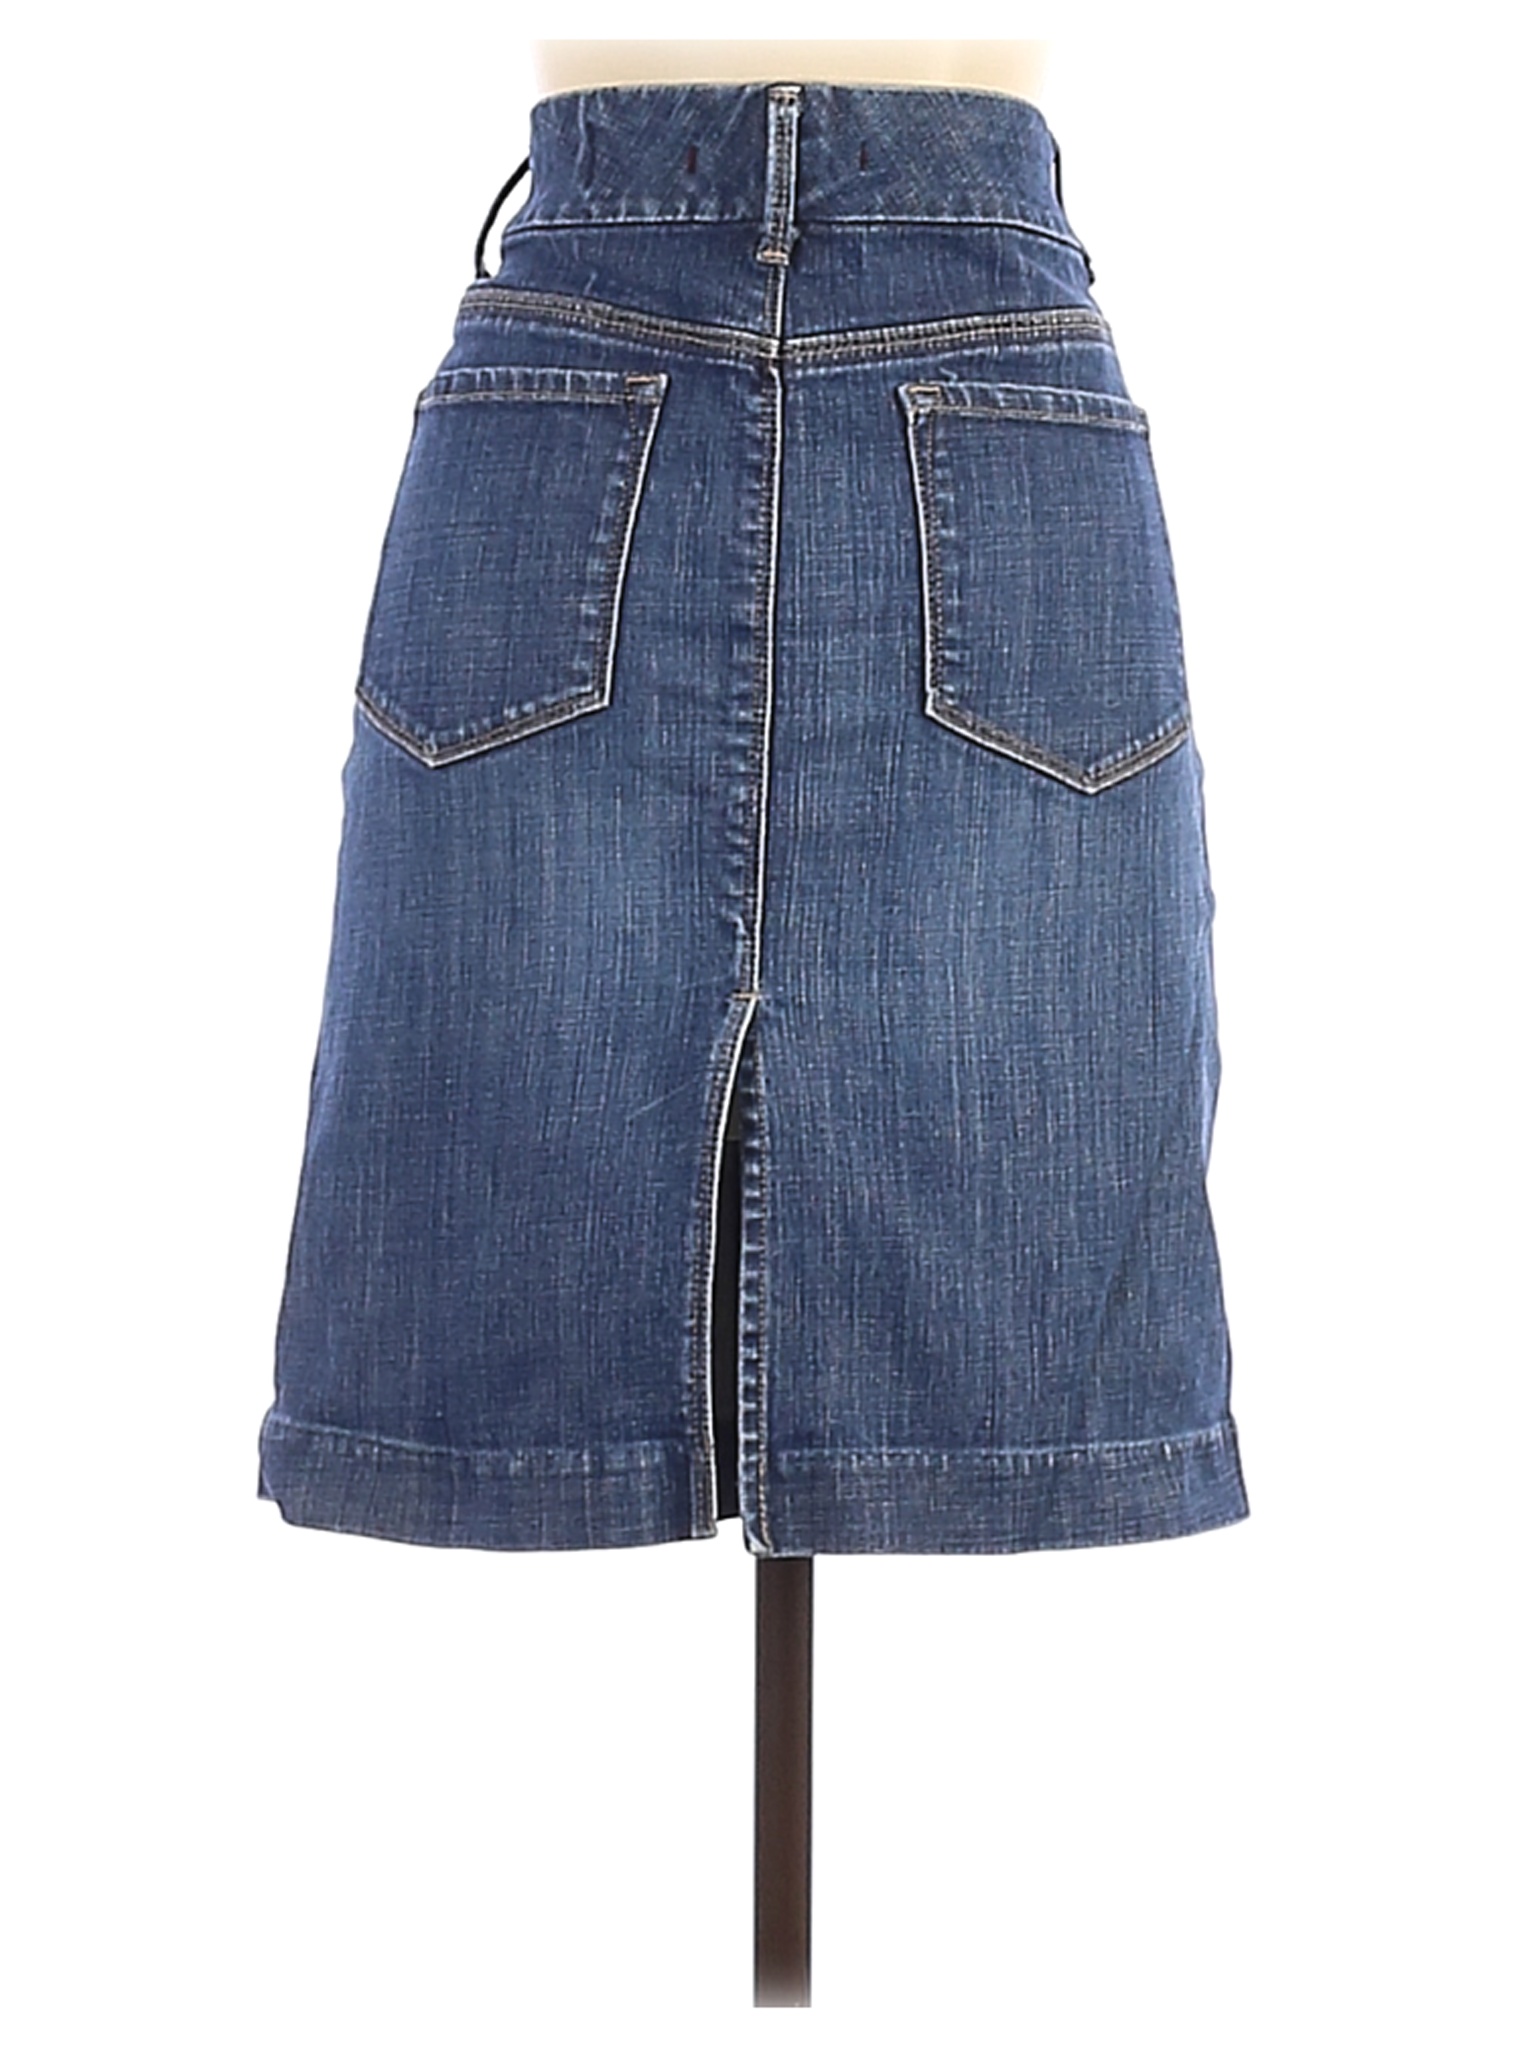 Gap Women Blue Denim Skirt 4 | eBay